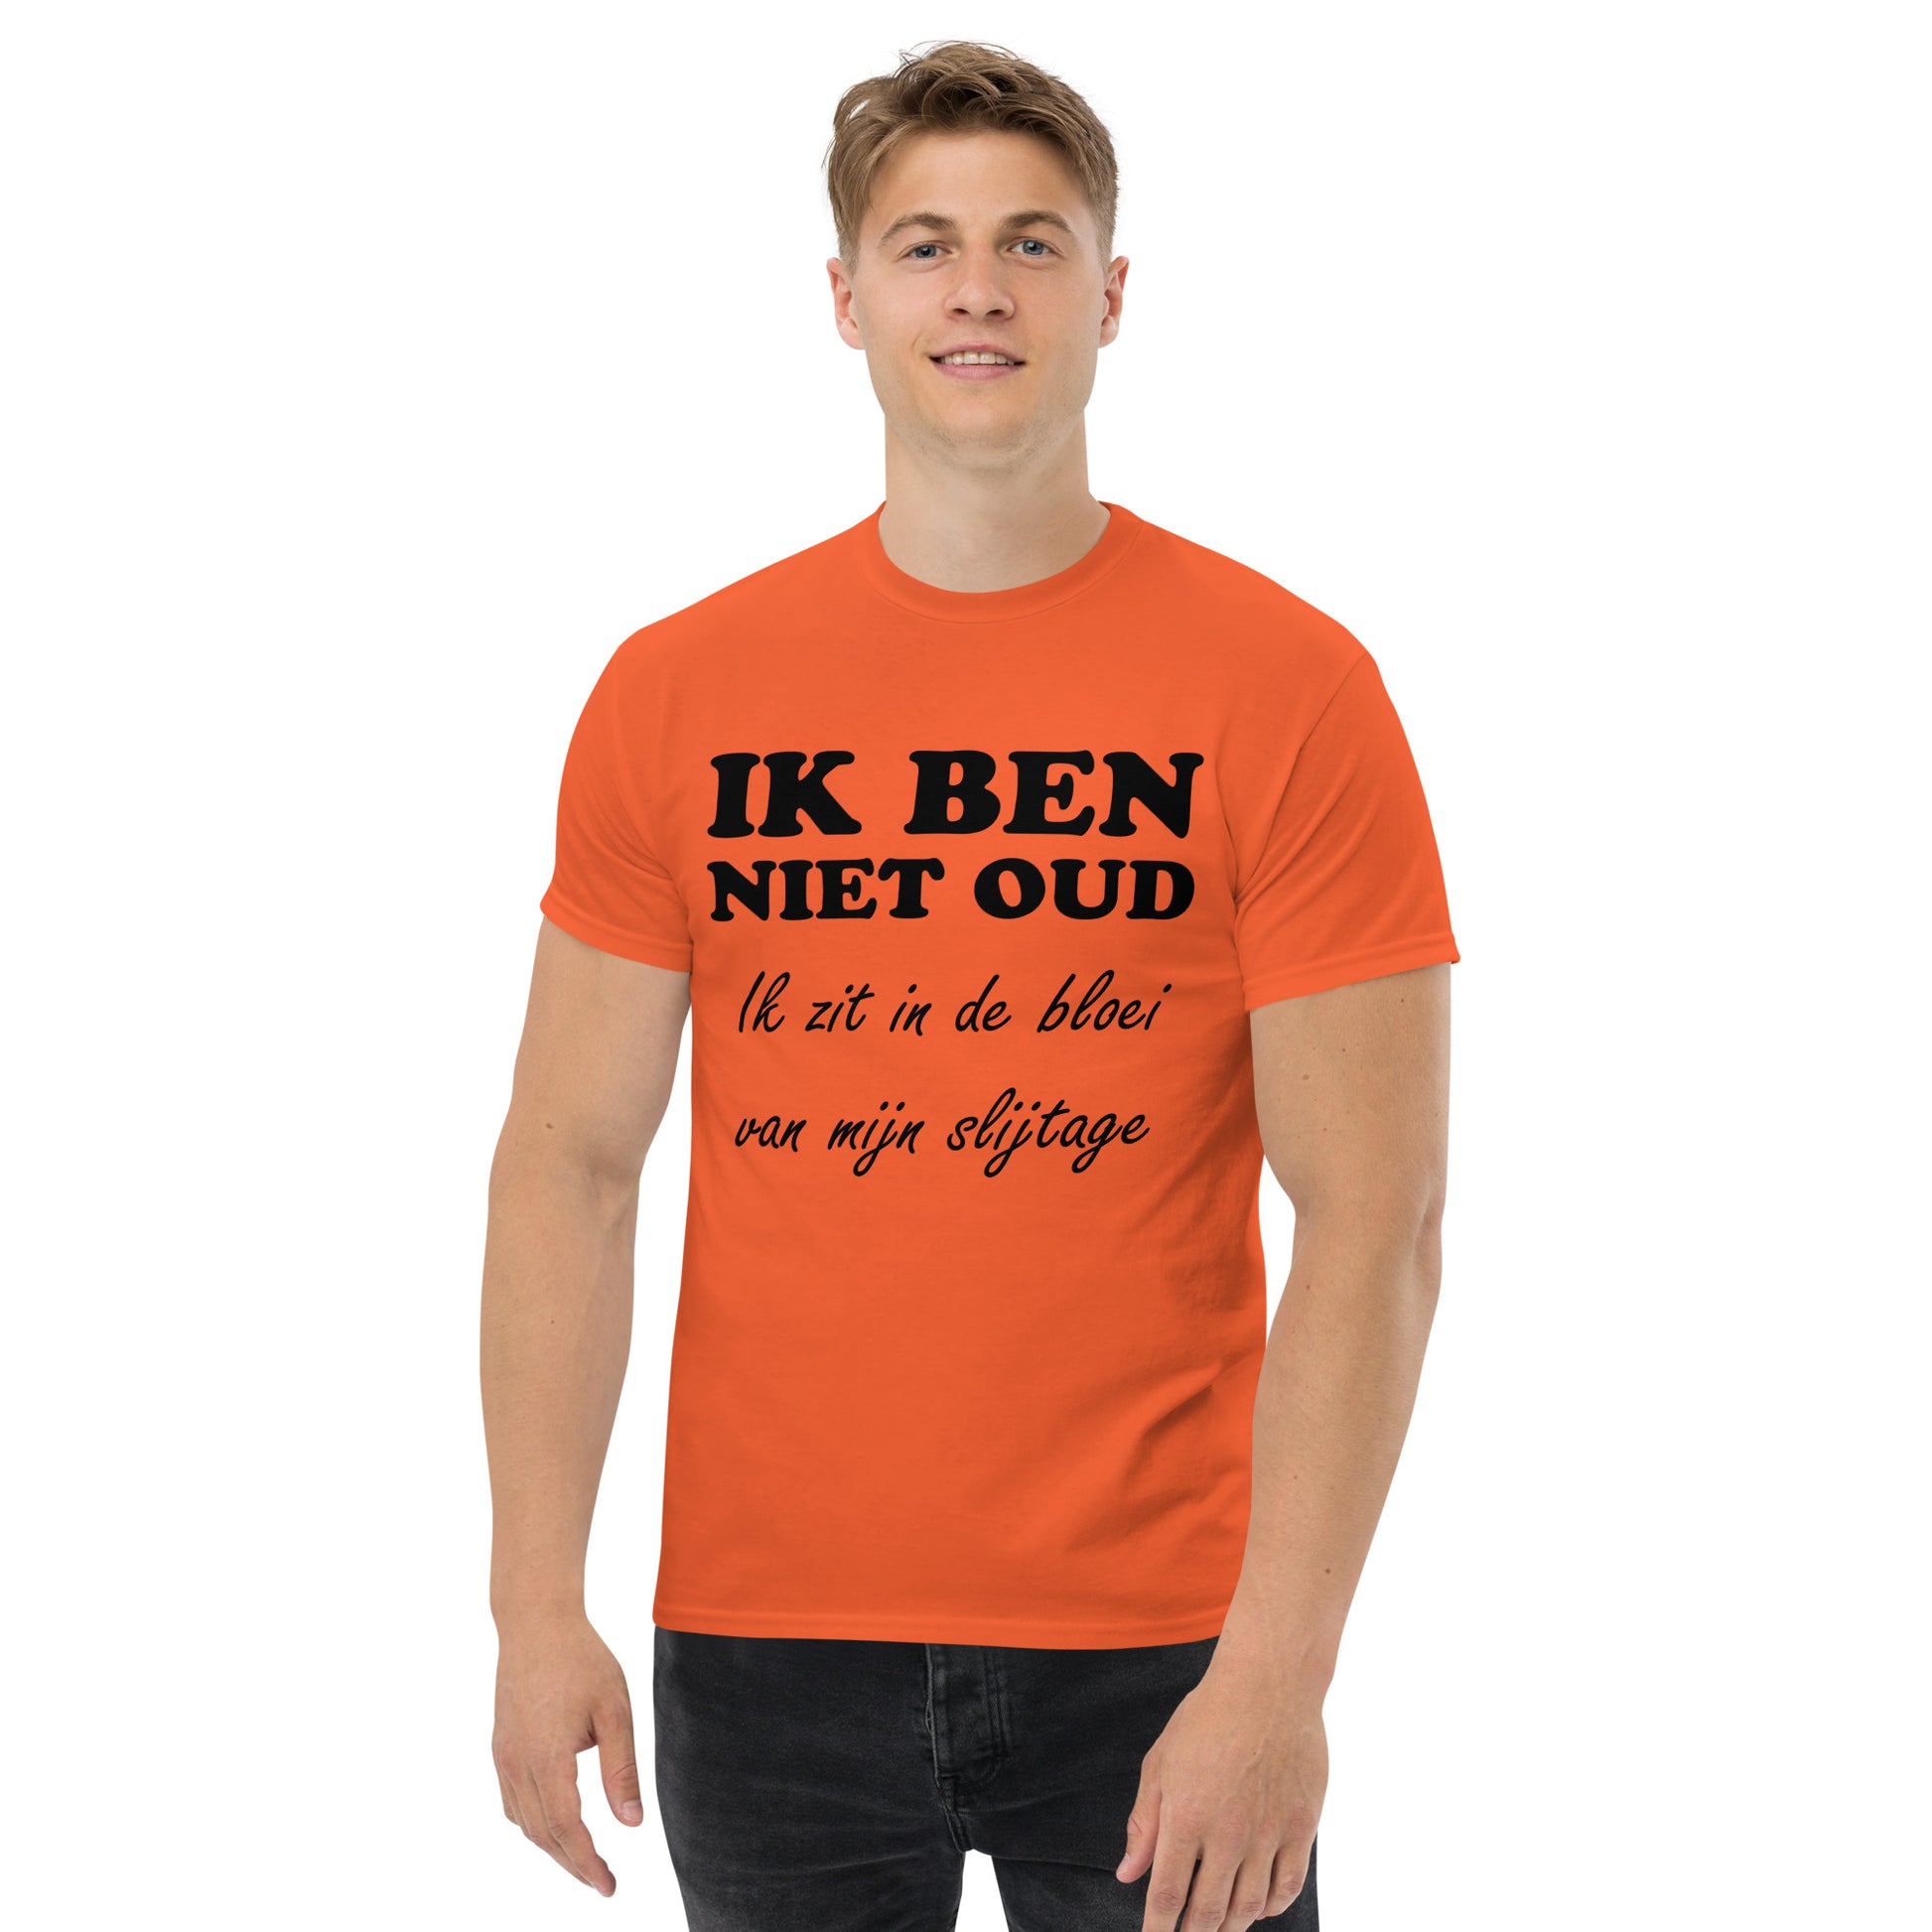 Orange T-shirt with the text "IK BEN NIET OUD ik zit in de bloei van mijn slijtage"